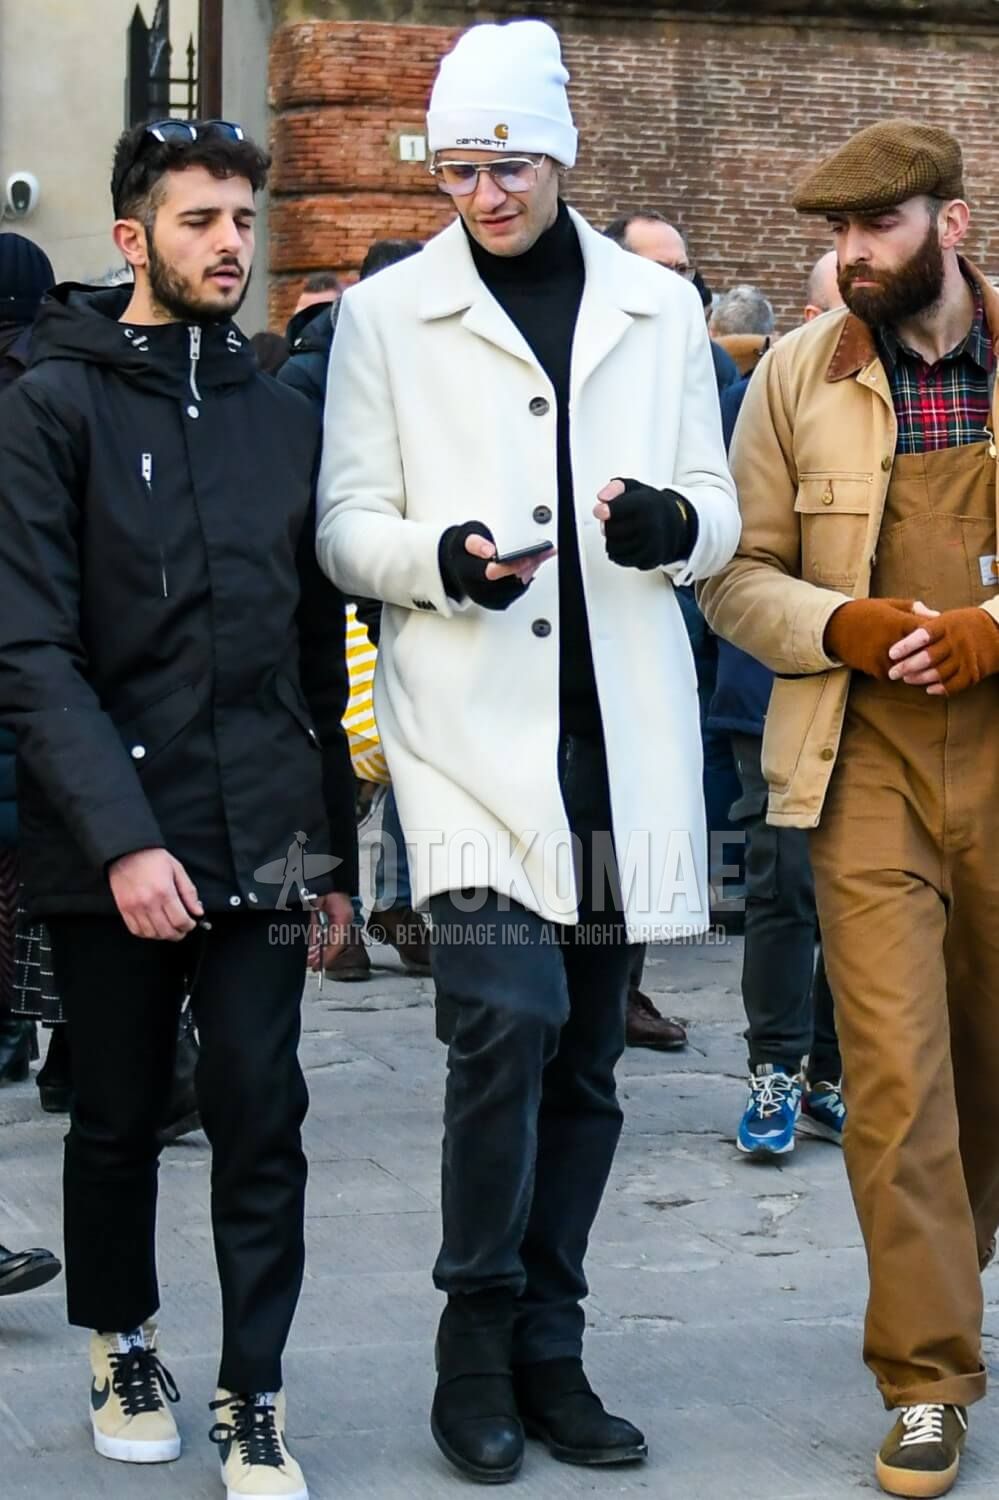 白コート メンズ特集 大人の男が参考にしたい注目の着こなしとアイテムを紹介 メンズファッションメディア Otokomaeotokomae 男前研究所